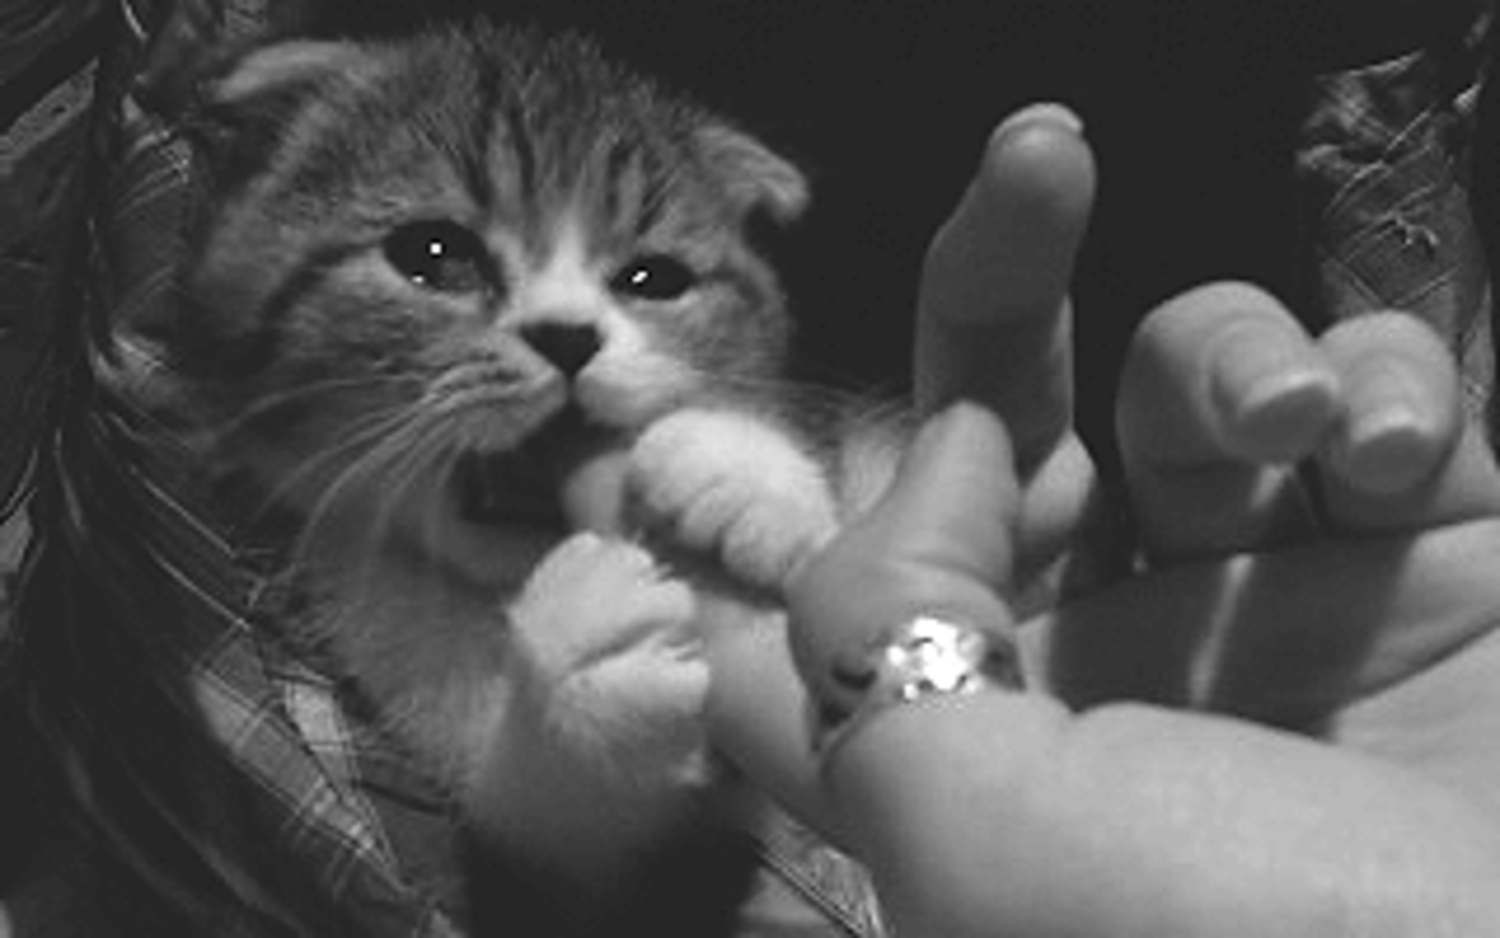 Укус пальца кошкой. Котенок кусает. Котенок кусает палец. Кошки гифки. Кот кусает гиф.